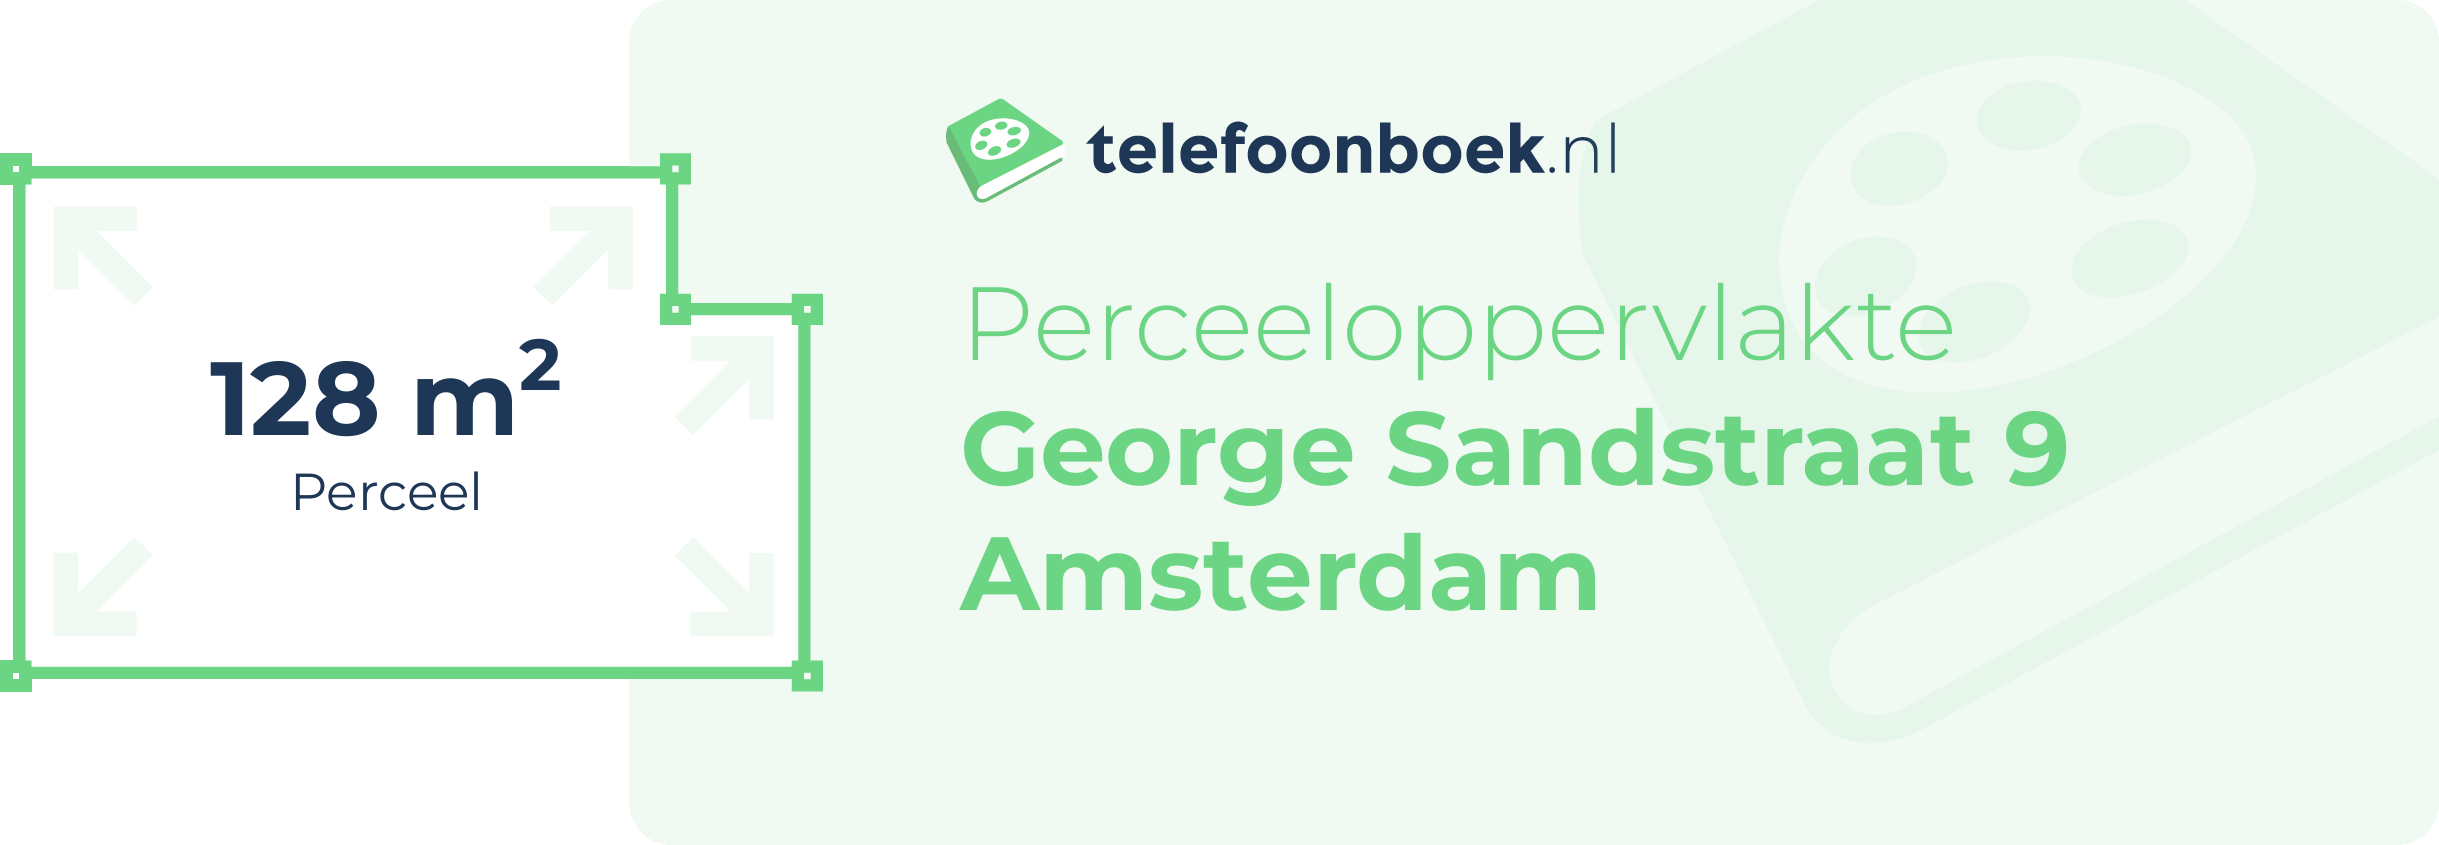 Perceeloppervlakte George Sandstraat 9 Amsterdam